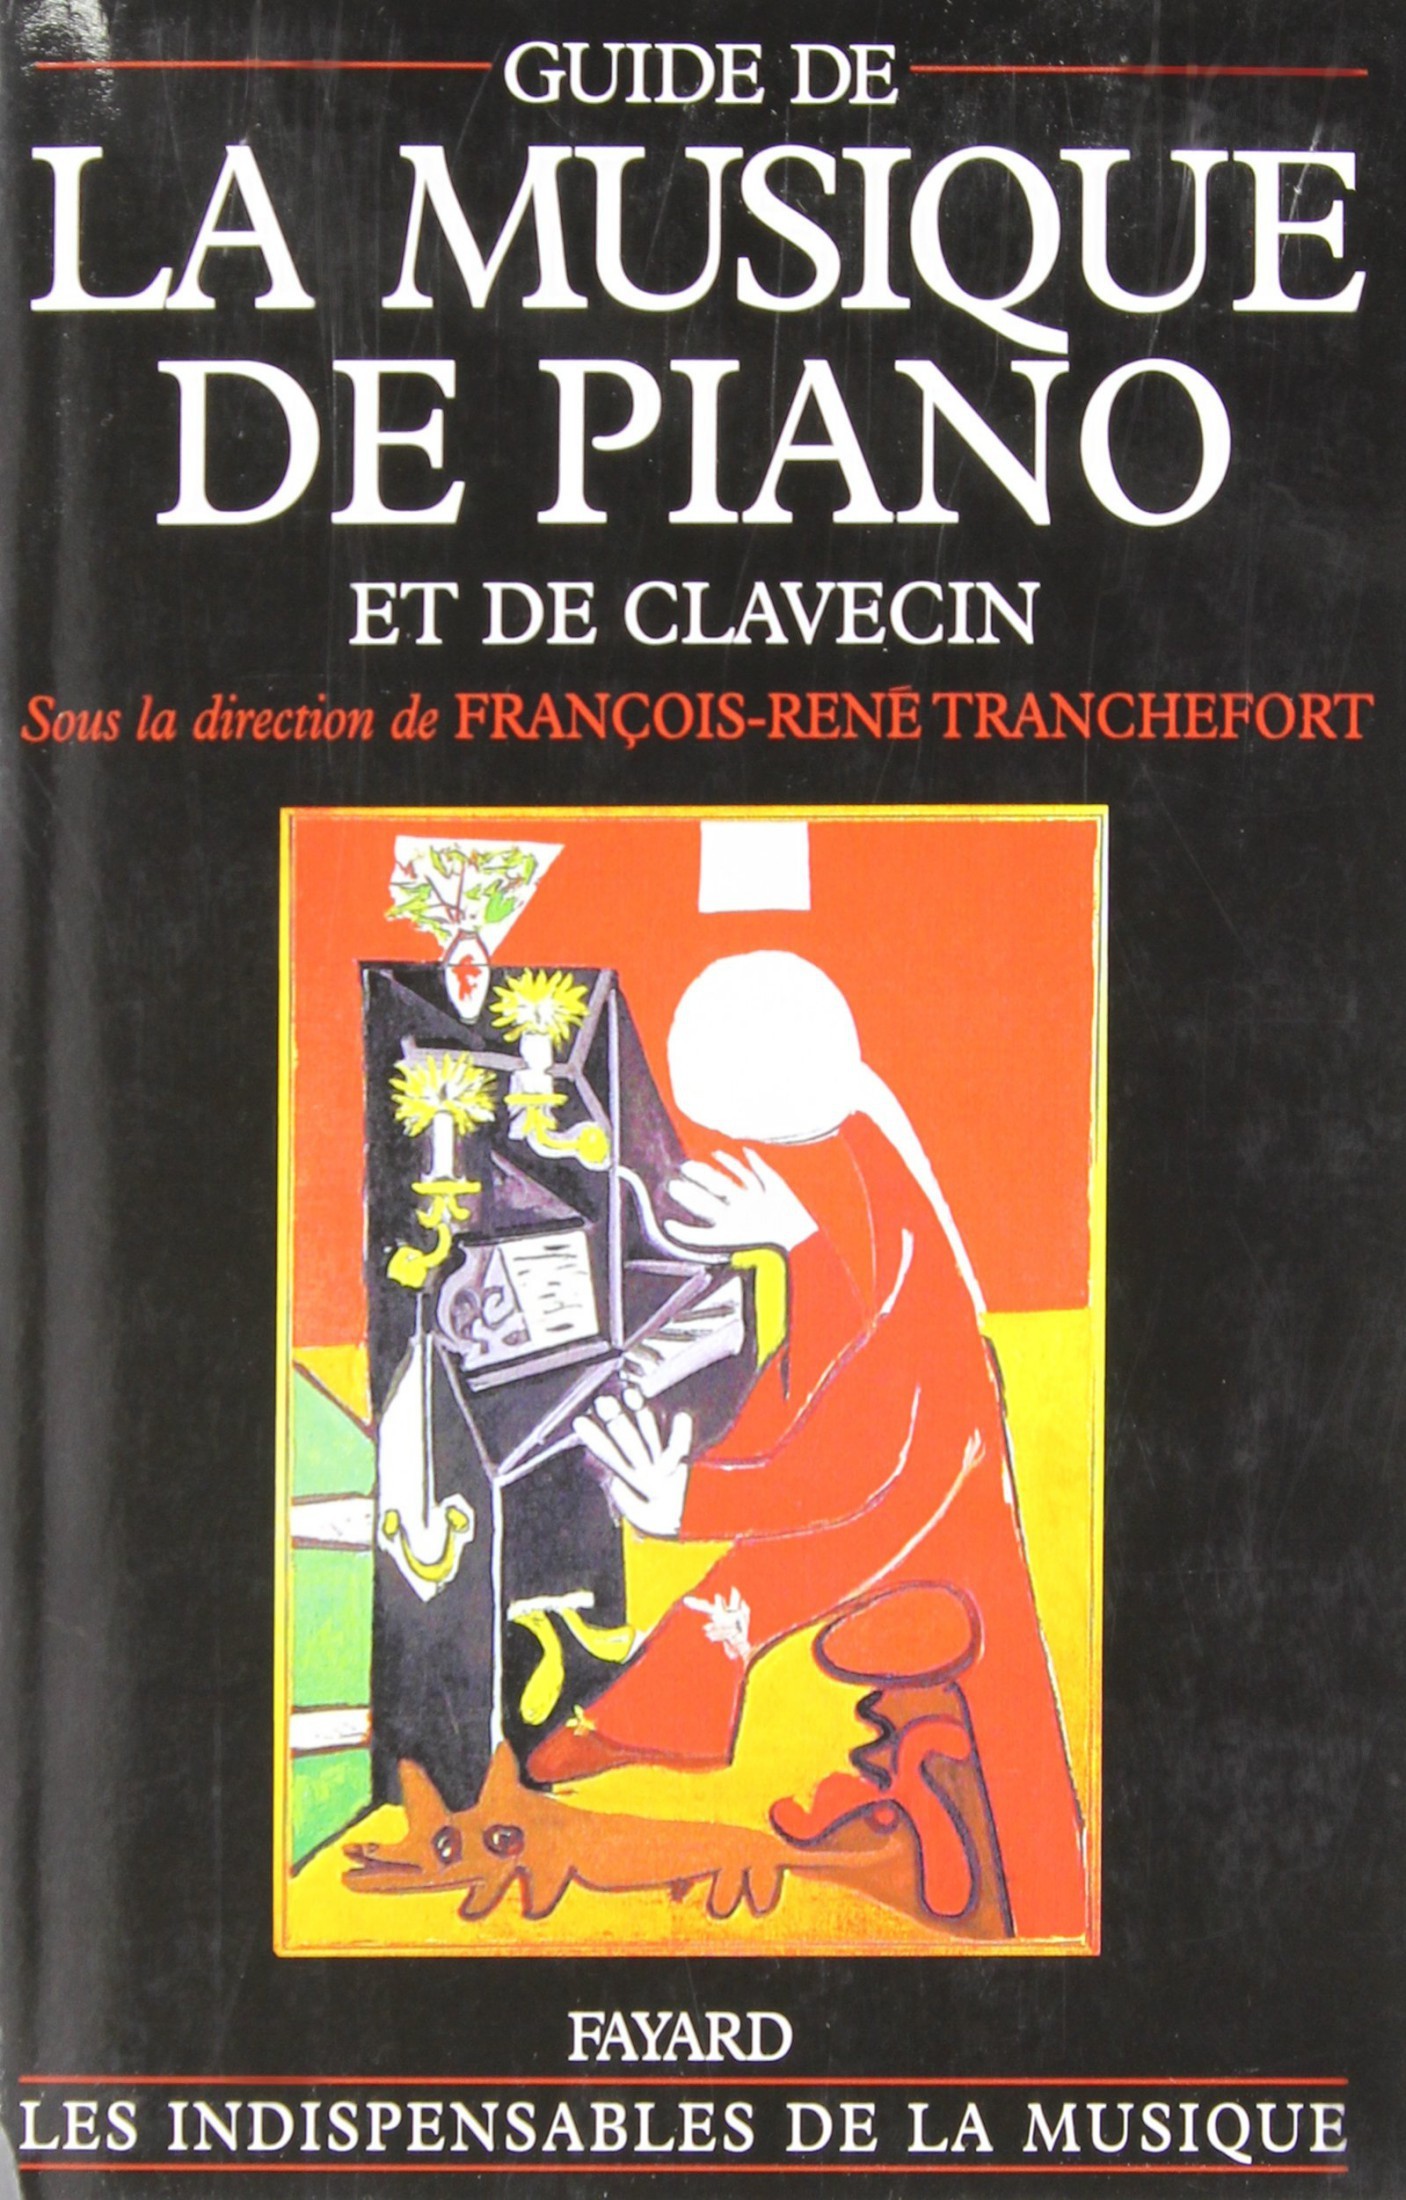 Guide de la musique de piano et de clavecin - François-René Tranchefort